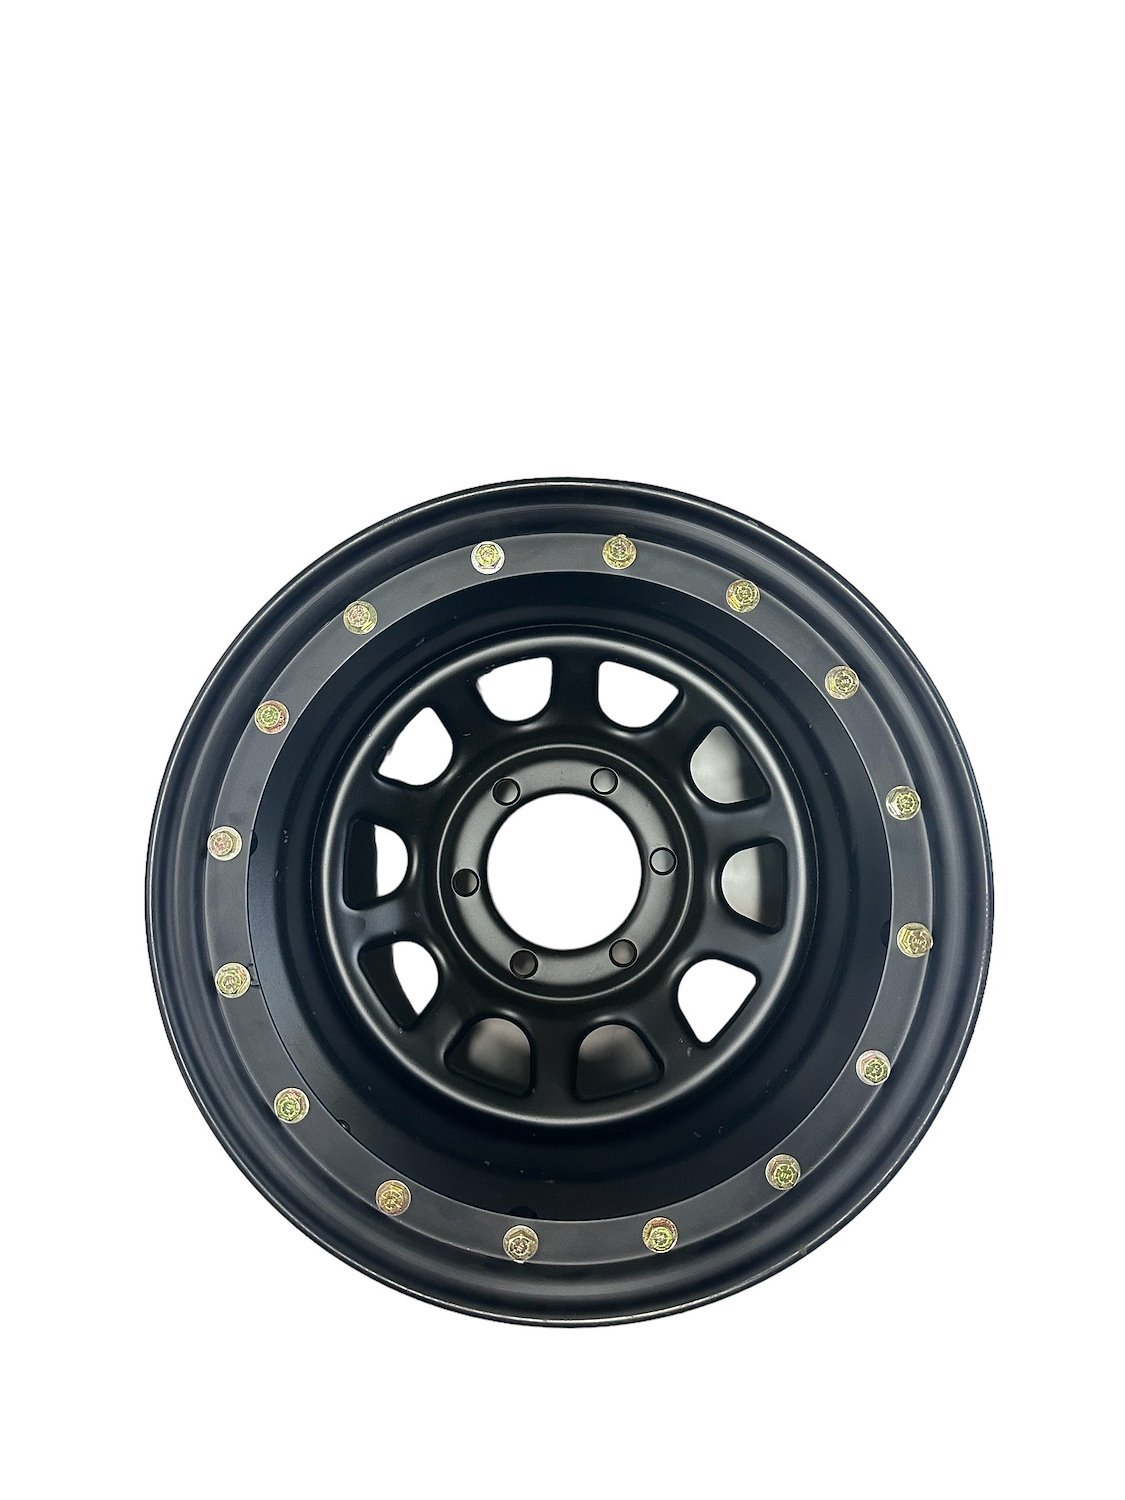 U.S. Wheel #844-7060: *BLEMISHED Simulated Beadlock Stealth Black Daytona  Wheel (Series 844)